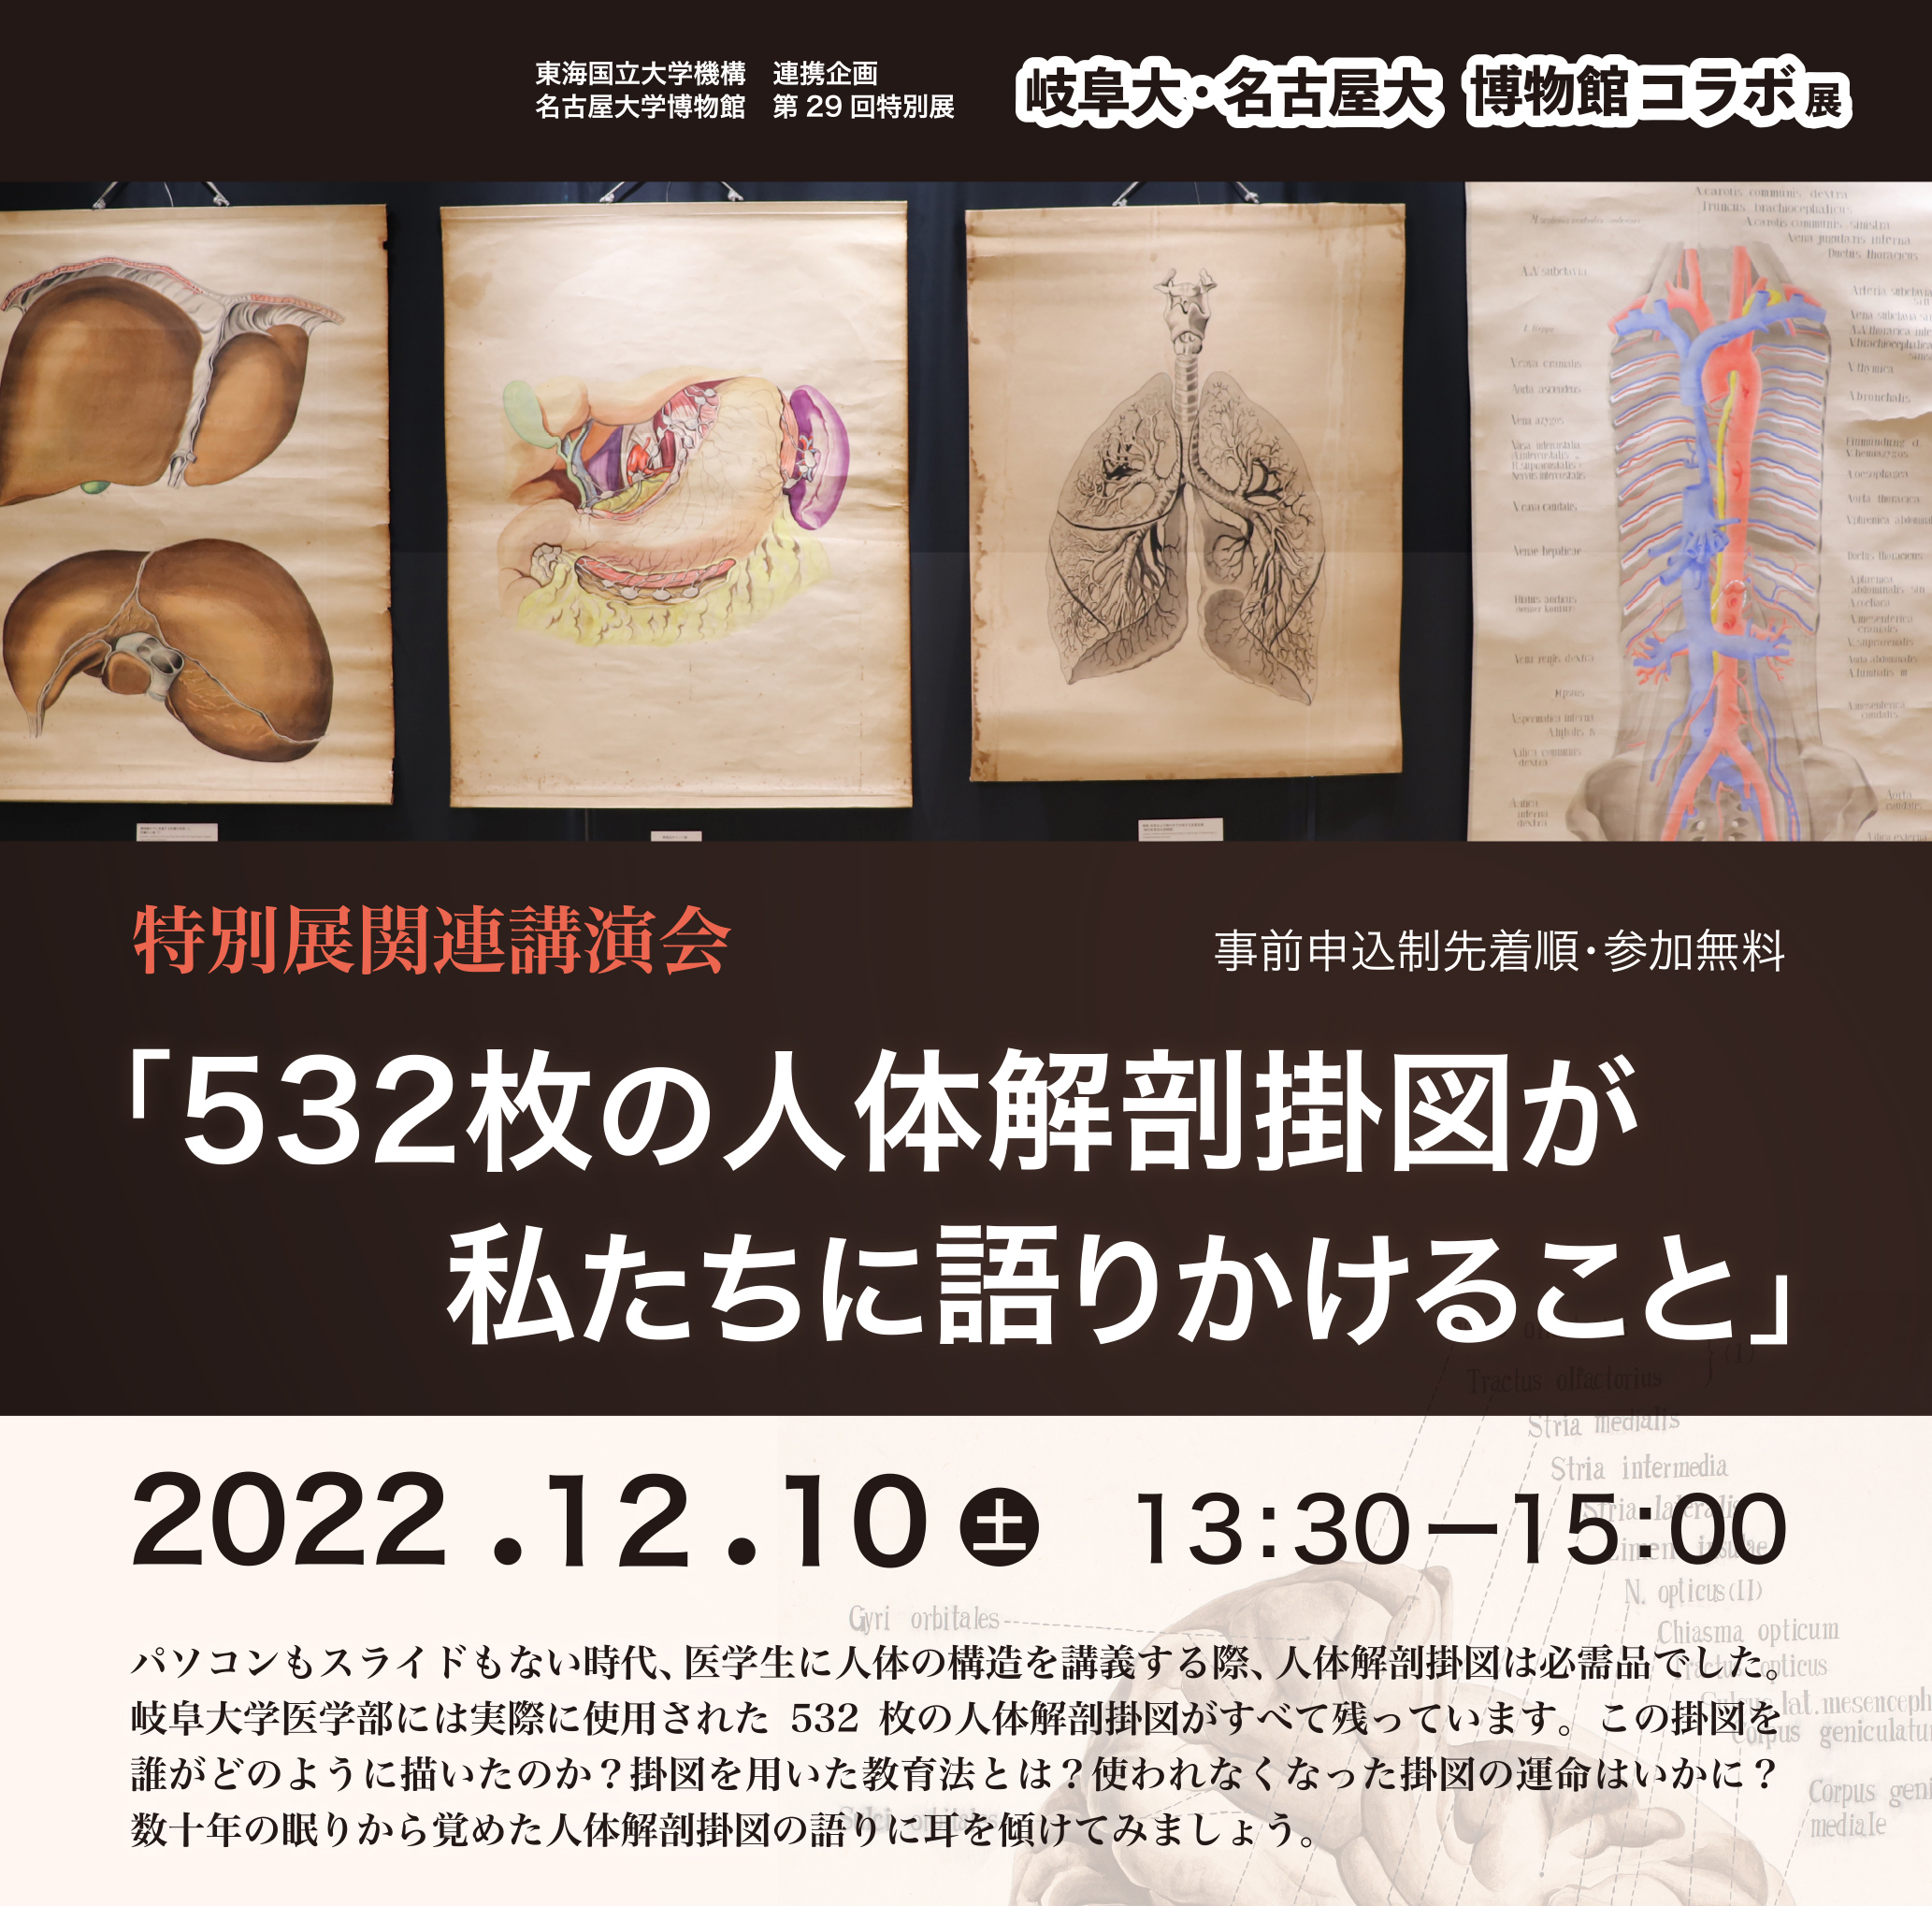 名大博物館第29回特別展 　講演会 532枚の人体解剖掛図が私たちに語りかけること